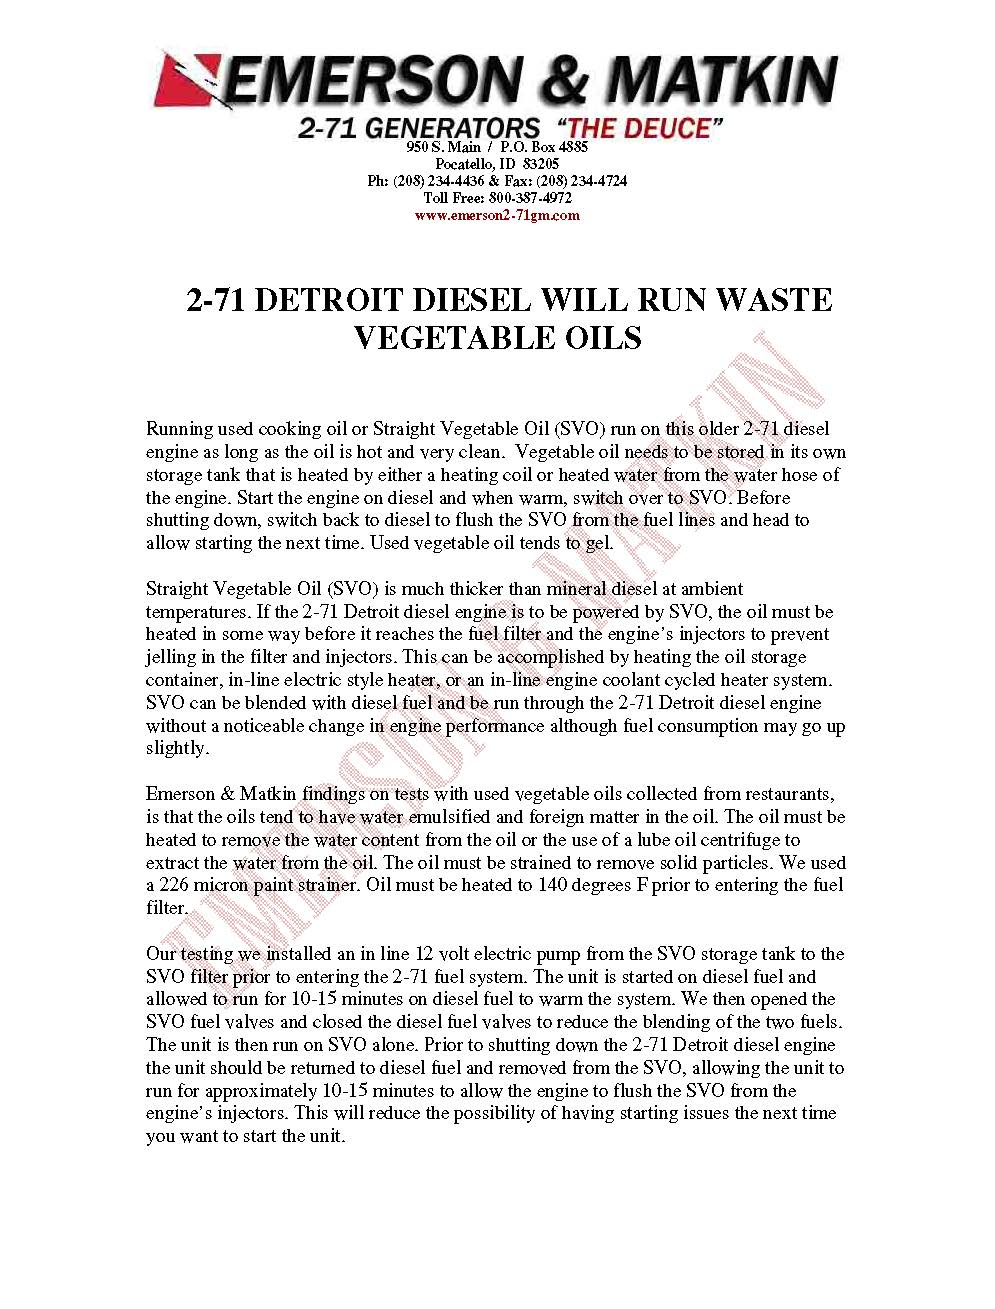 2-71 Bio Diesel Info